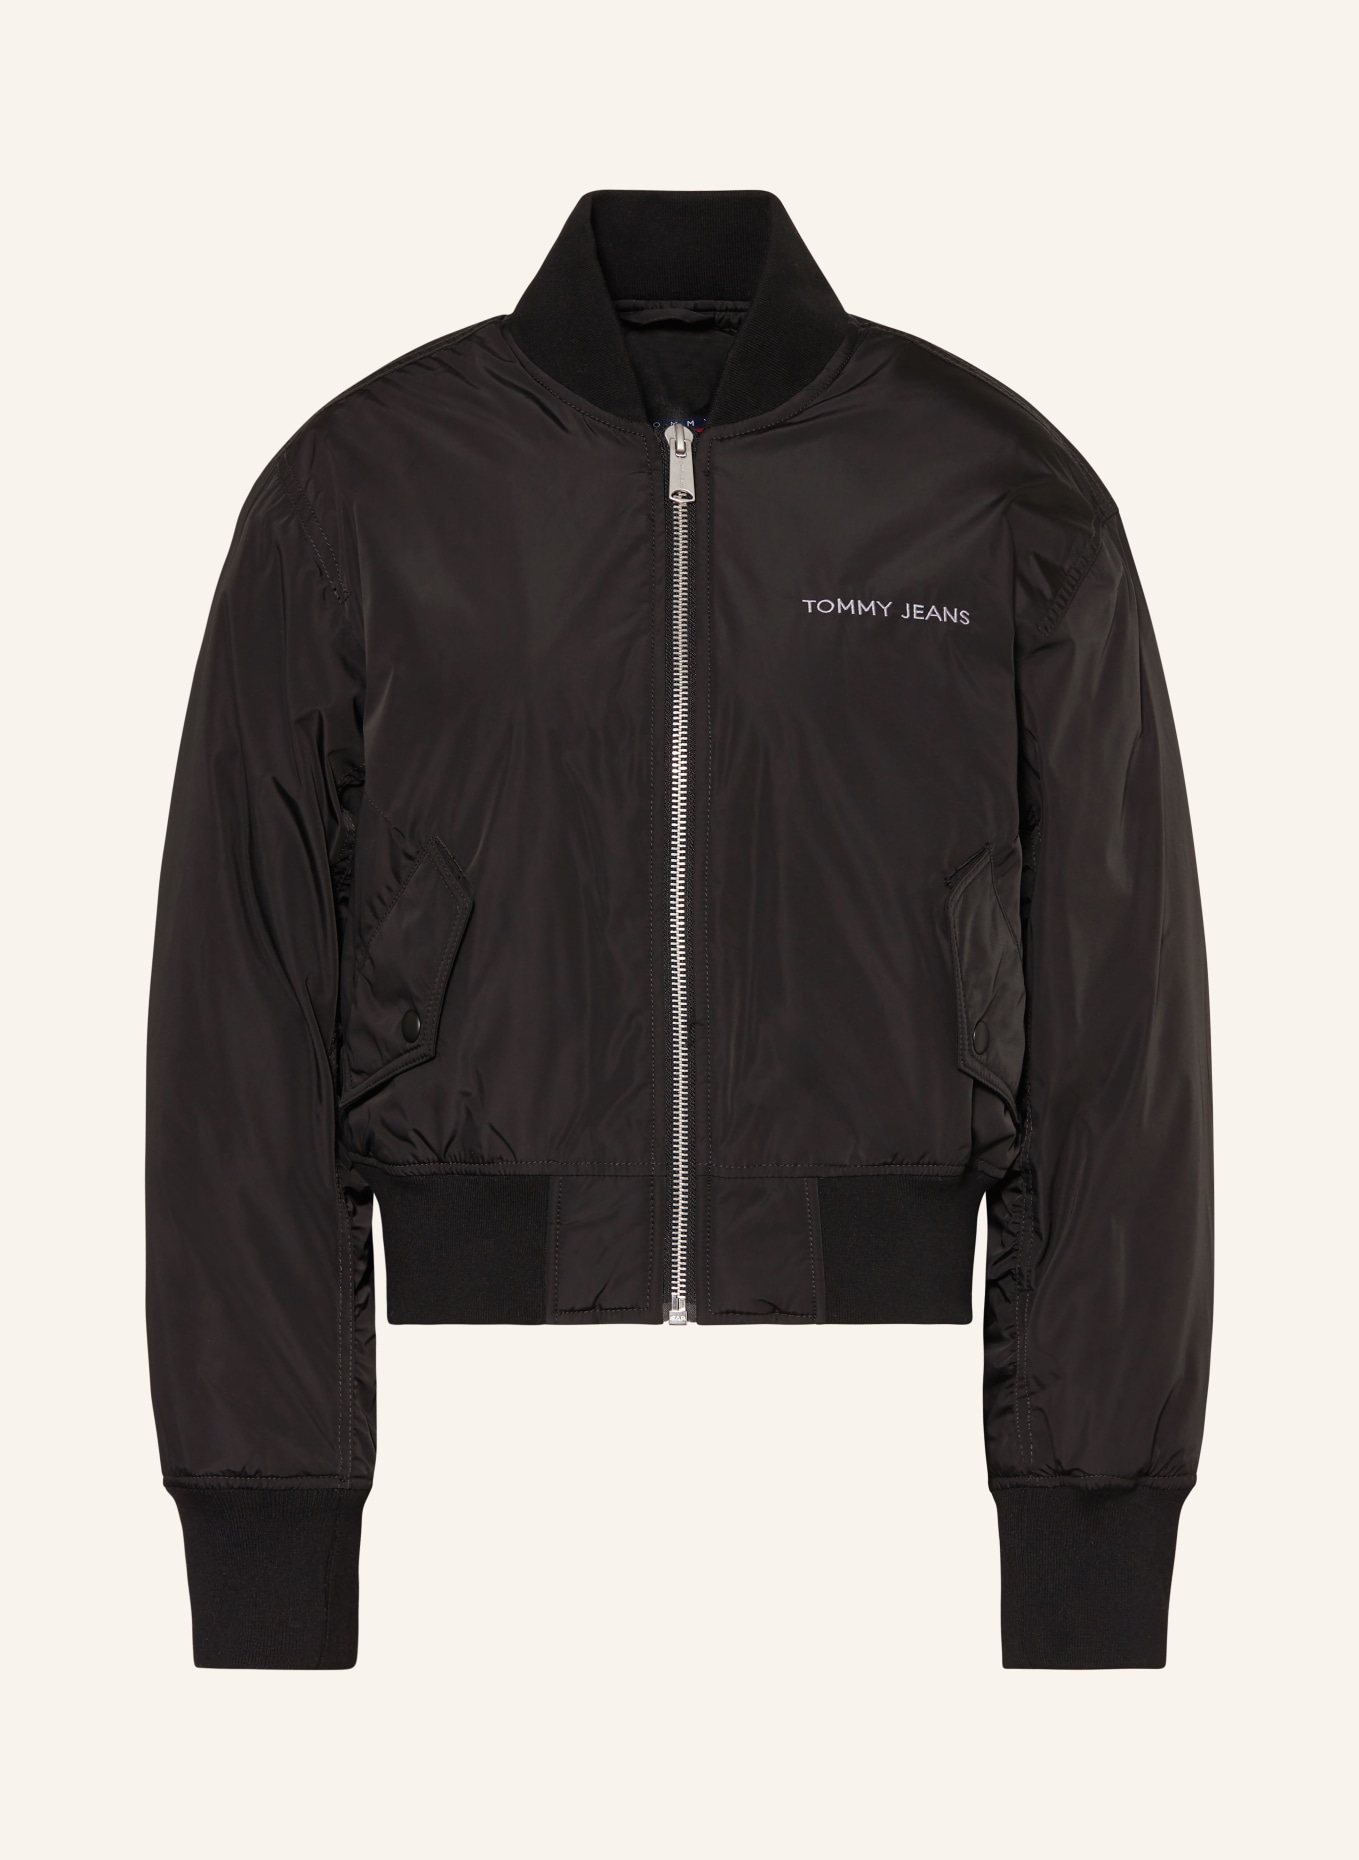 TOMMY JEANS Bomber jacket, Color: BLACK (Image 1)